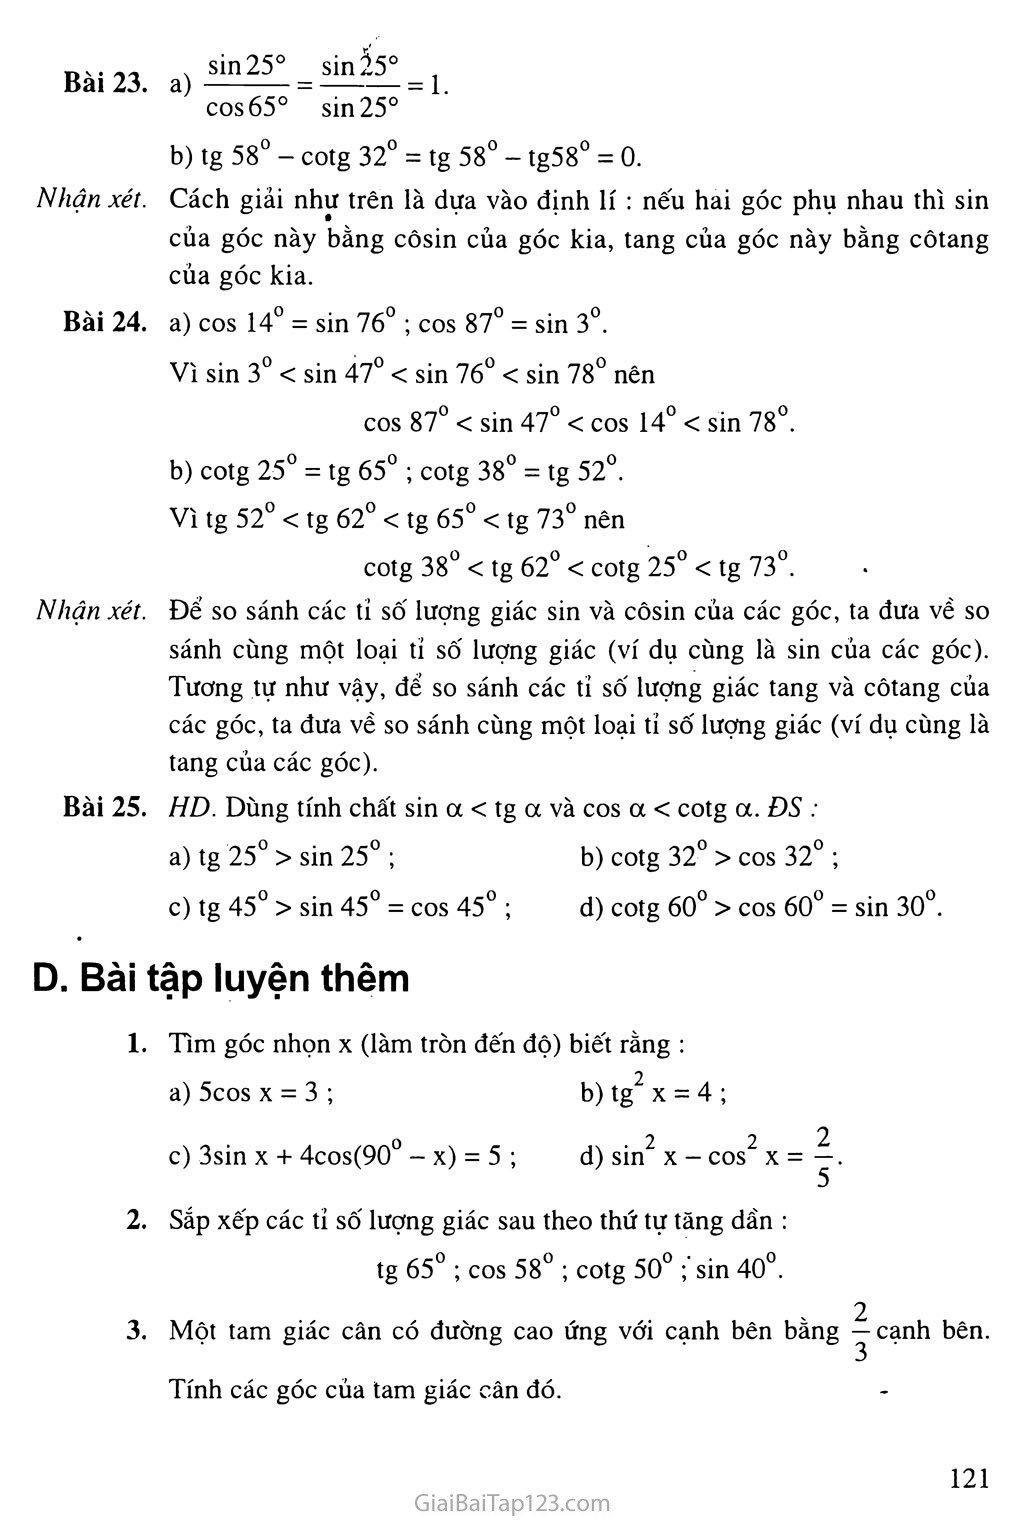 Bài 3. Bảng lượng giác trang 3